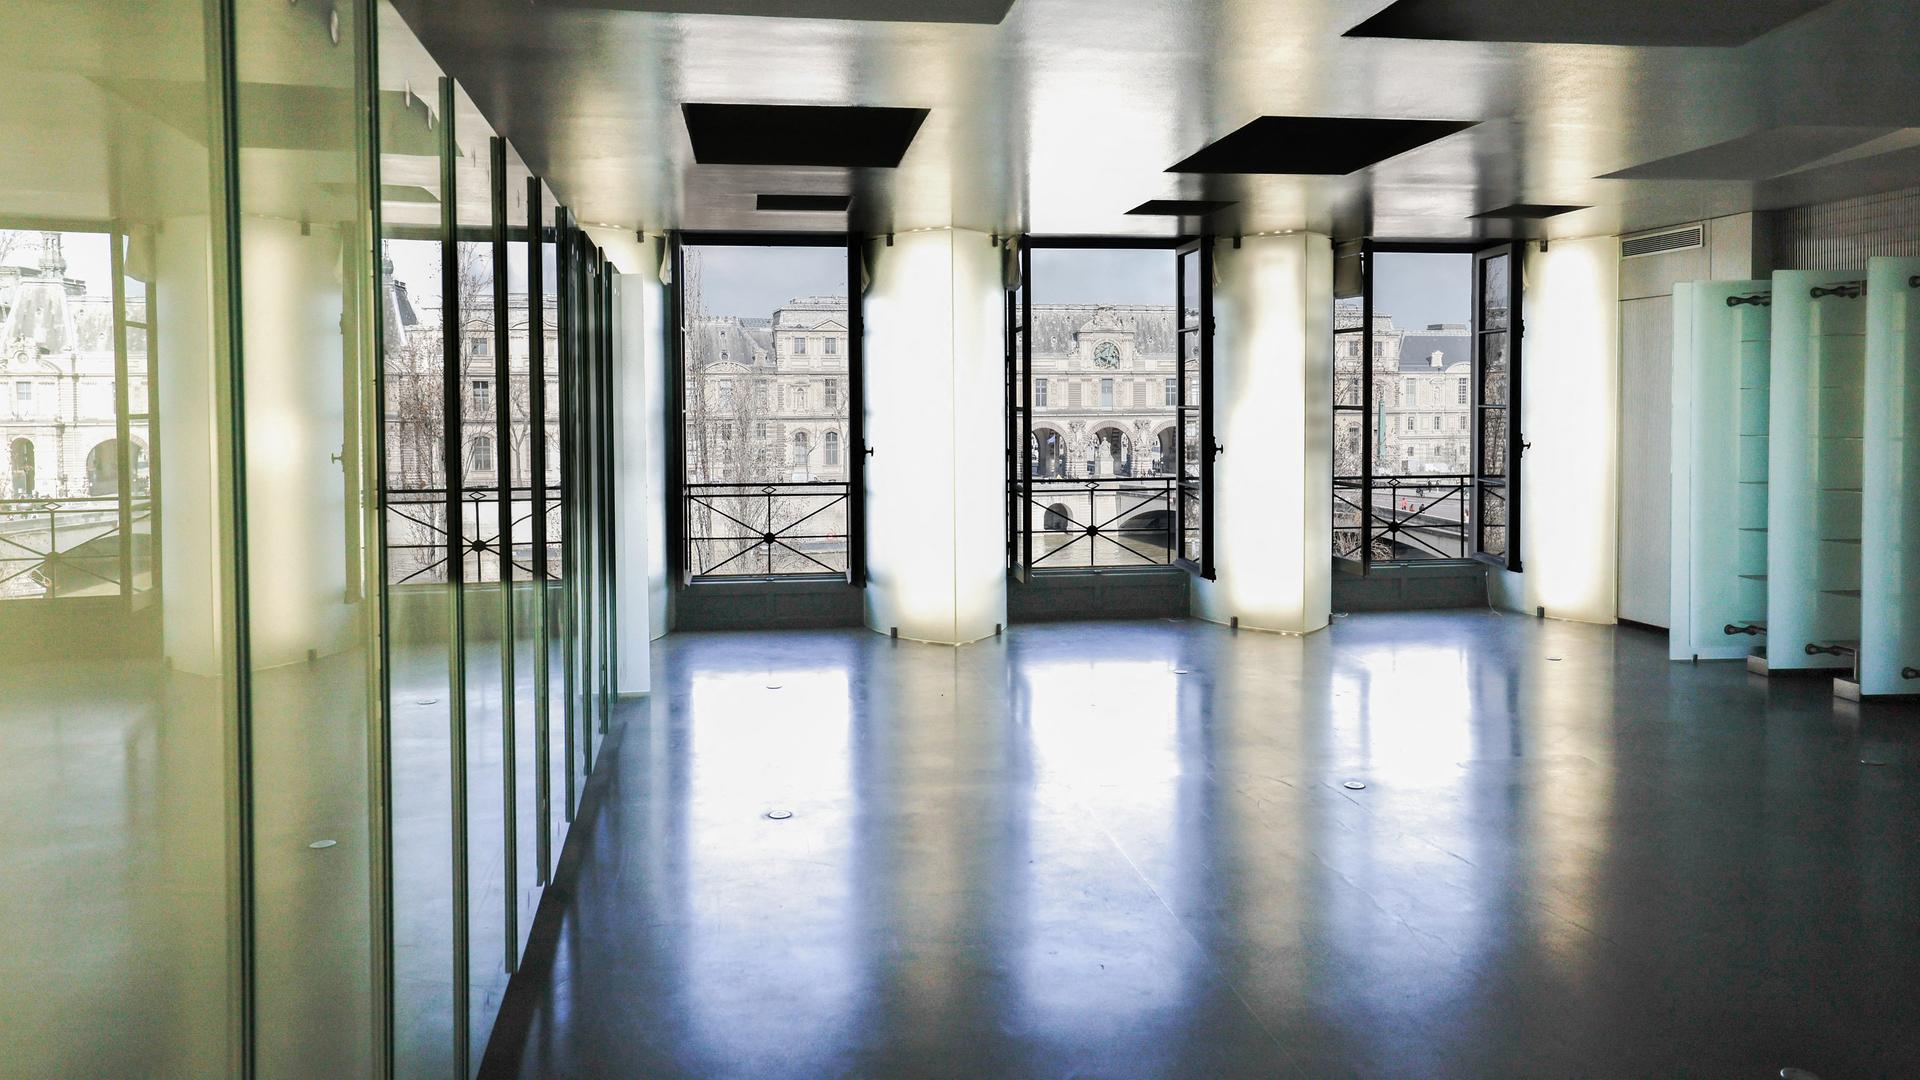 Auf dem Bild sieht man das Wohnzimmer von Karl Lagerfelds Pariser Wohnung. Ein heller, leerer Raum mit drei großen Fenstern, Steinboden und hellgrünen Glaselementen an der Seite. Durch die Fenster sieht man das Louvre-Museum.